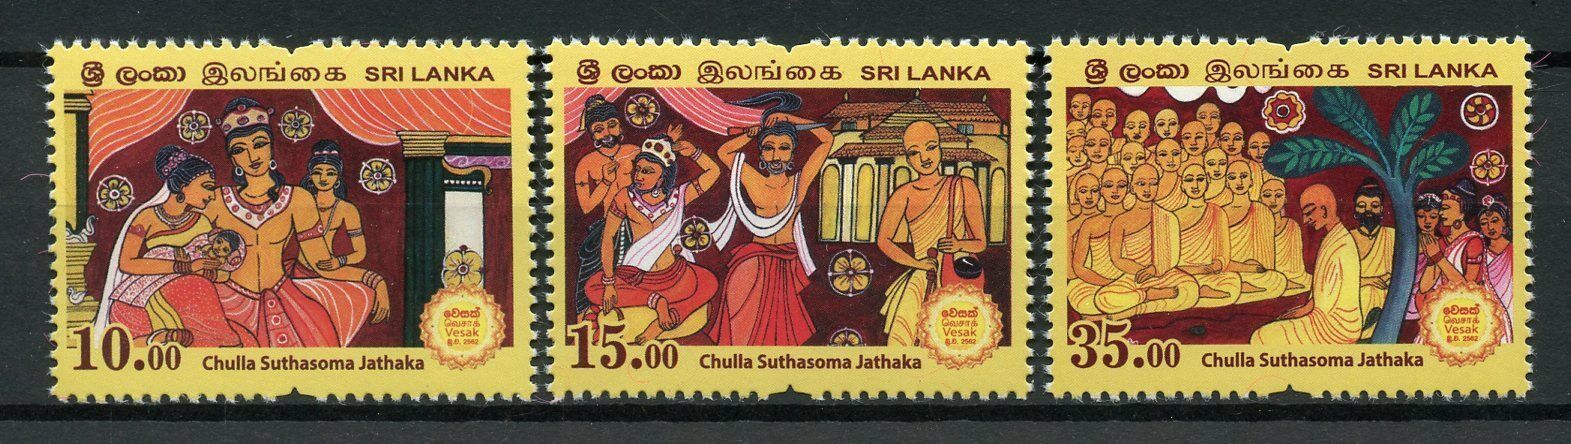 Sri Lanka 2018 MNH Vesak Buddha Day Chulla Suthasoma Jathaka 3v Set Stamps